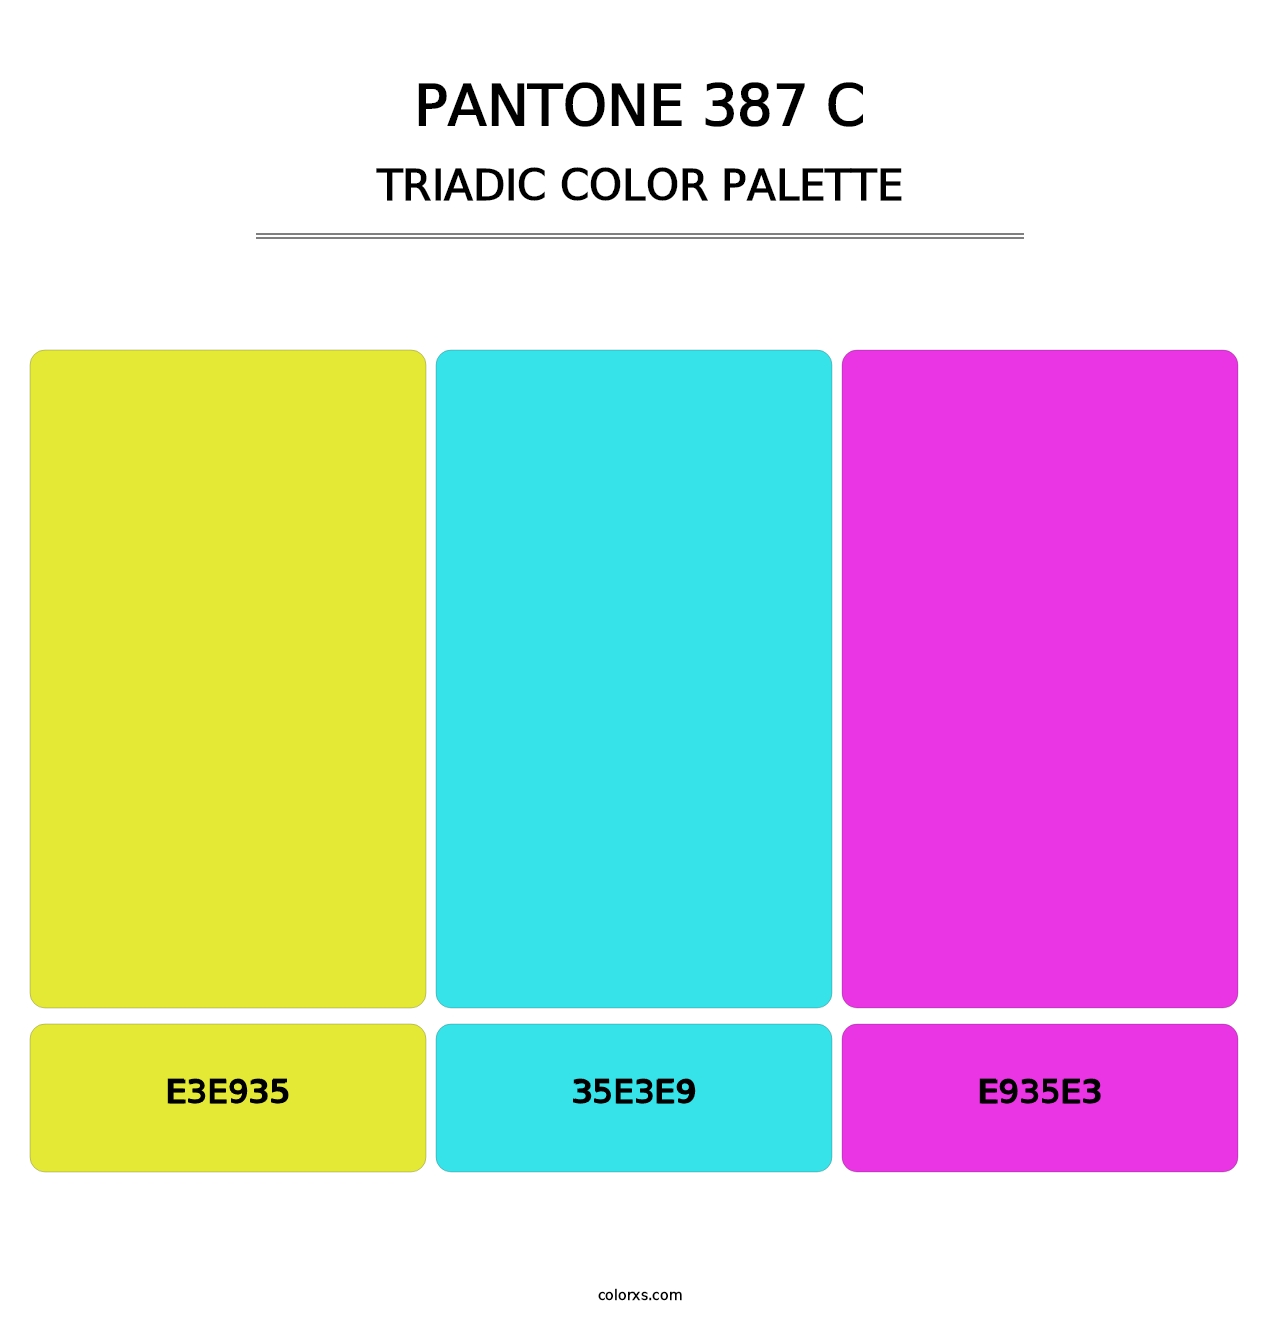 PANTONE 387 C - Triadic Color Palette